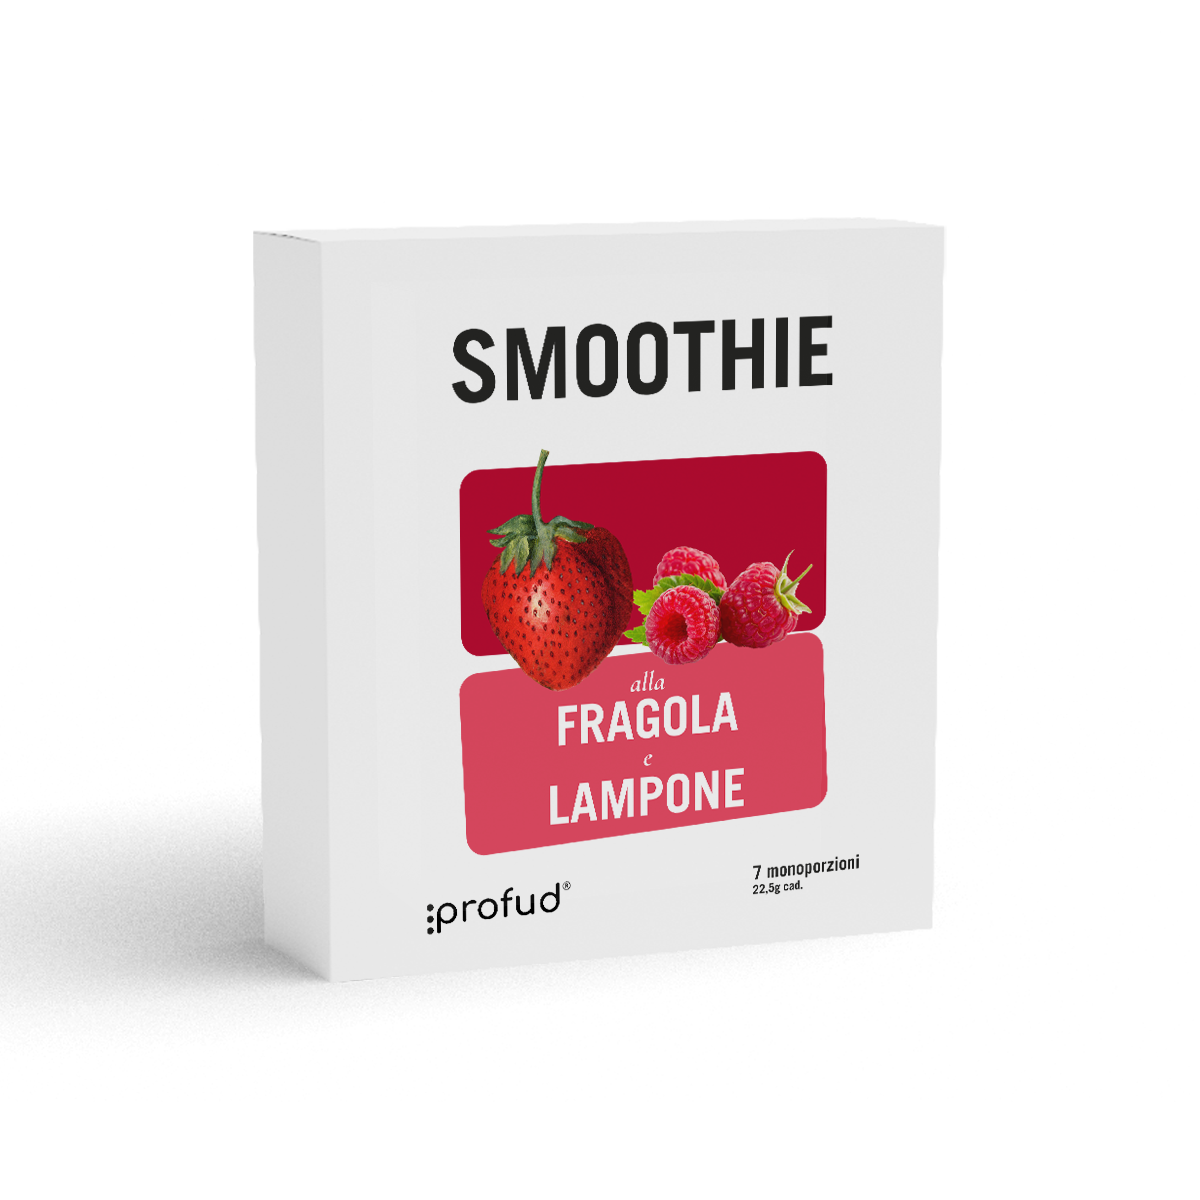 smoothie proteico profud fruttato